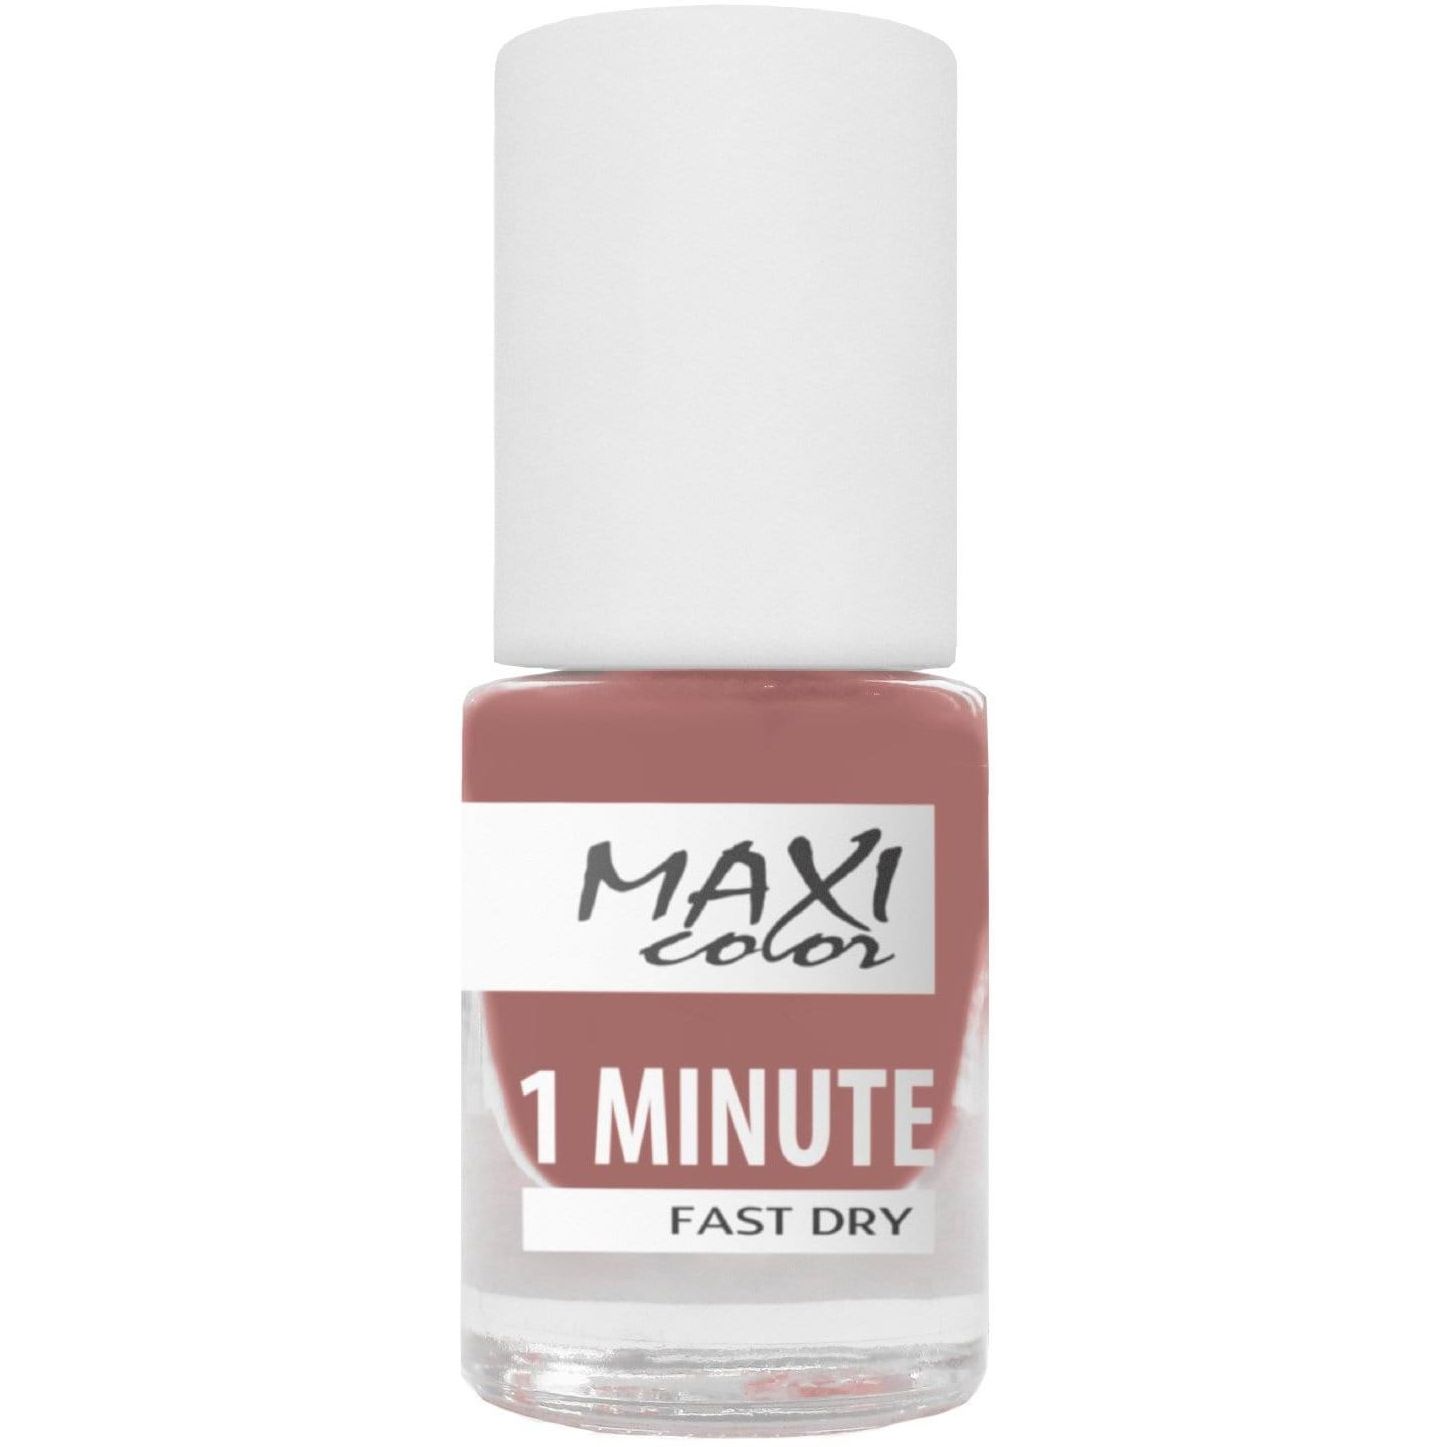 Лак для ногтей Maxi Color 1 Minute Fast Dry тон 016, 6 мл - фото 1